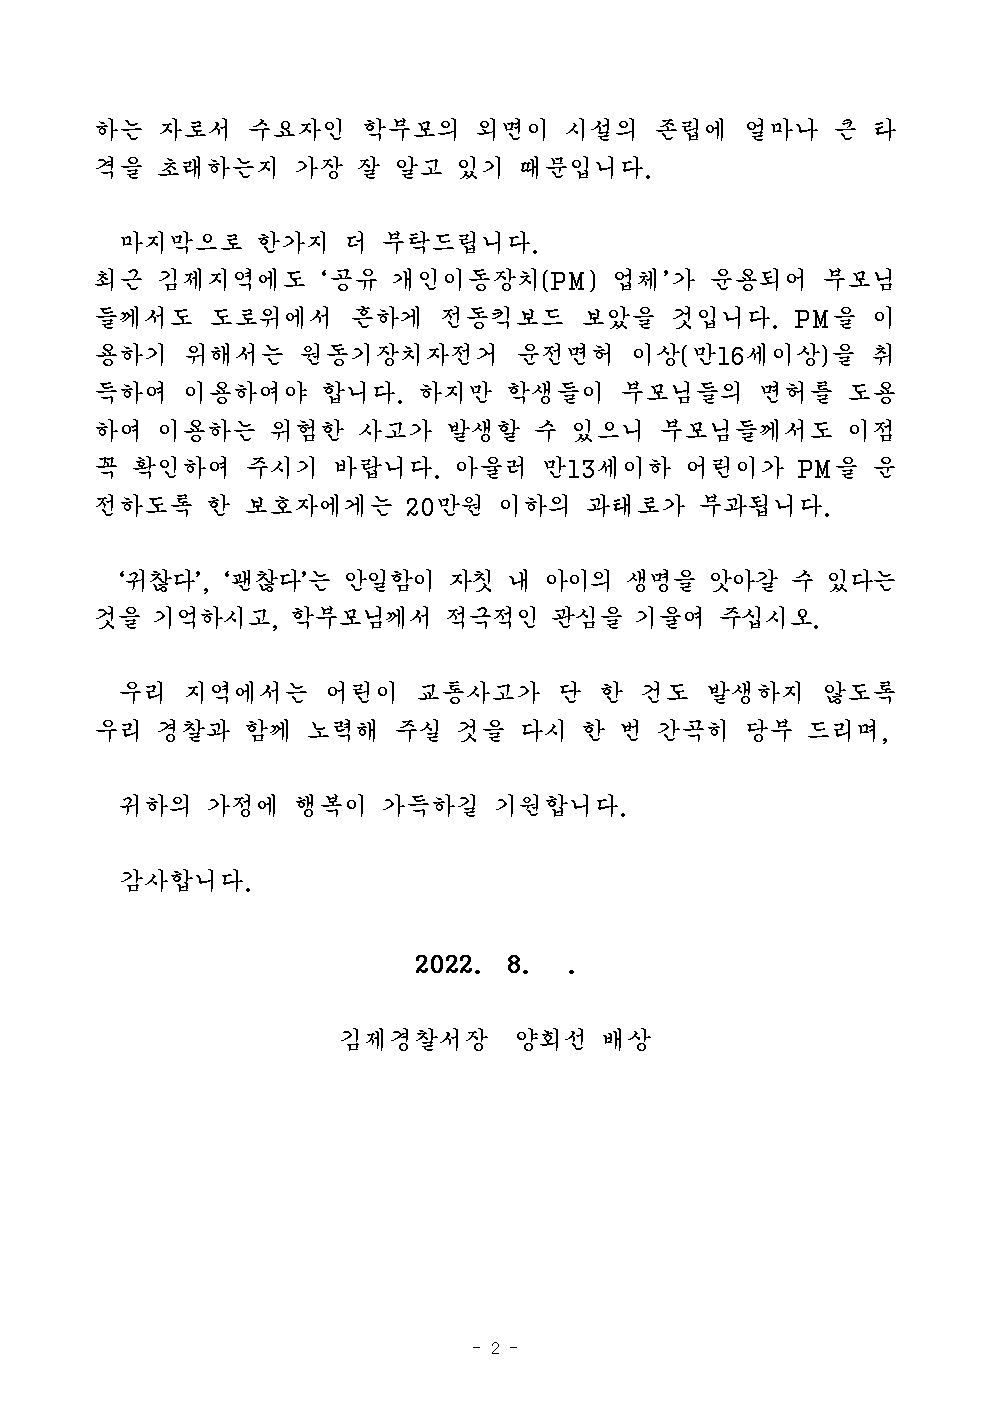 김제경찰서장 서한문002